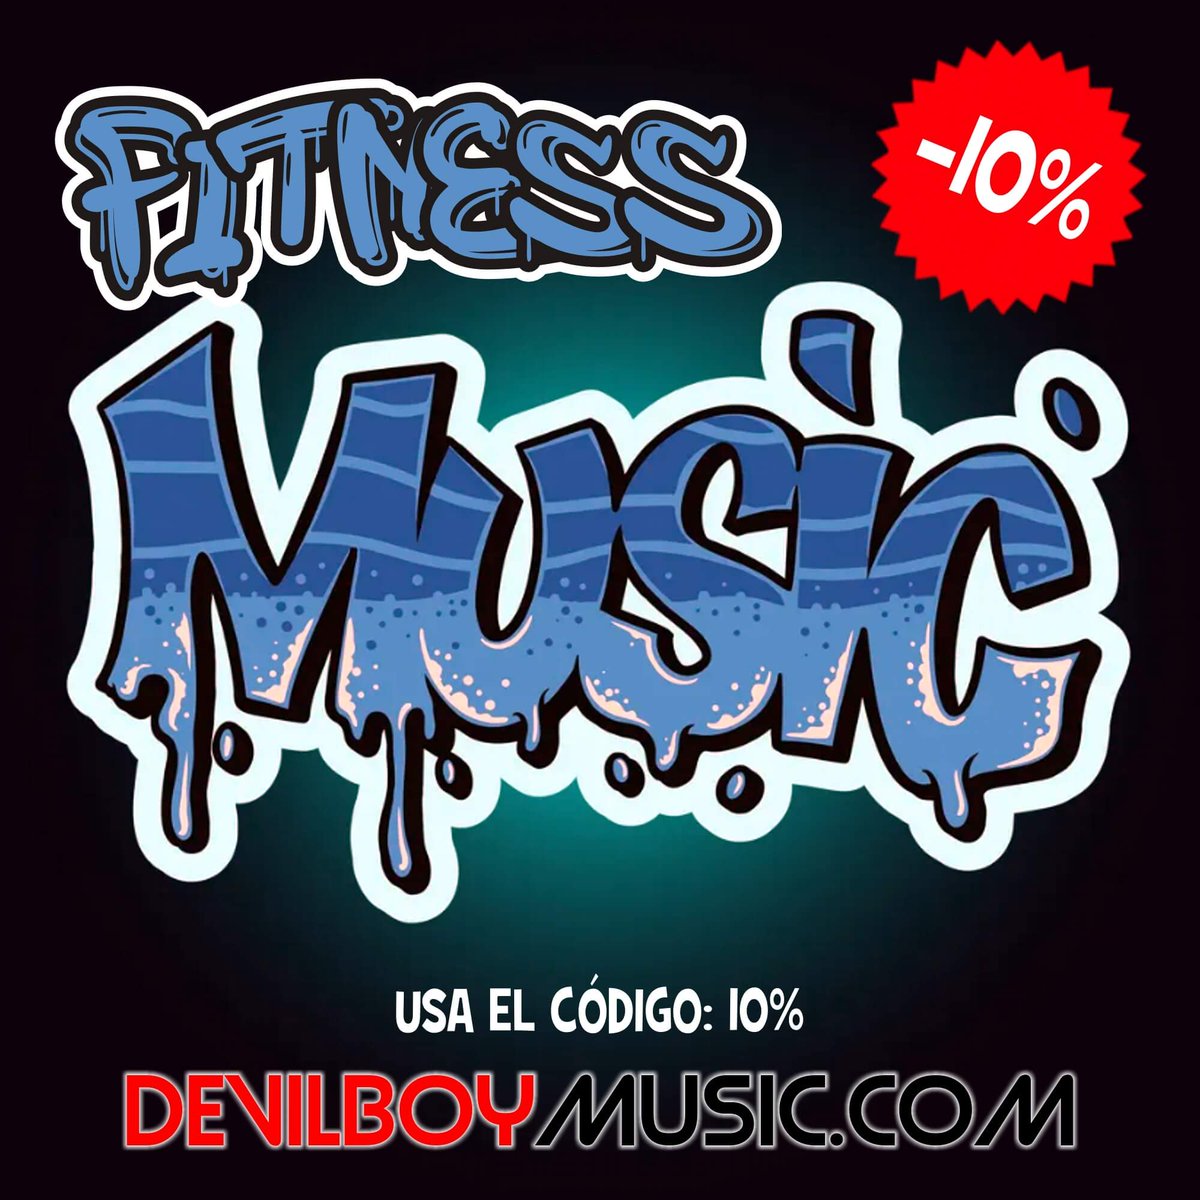 ¿Aún no conoces DevilBoyMusic.com? Tenemos disponibles 100 códigos del 10% de descuento en tu compra para que pruebes nuestras sesiones. Sin compra mínima.

¿Te lo vas a perder?

.
.
.
.
#aerobic #music #workout #dance #fitness #step #cicloindoor #zumbafitness